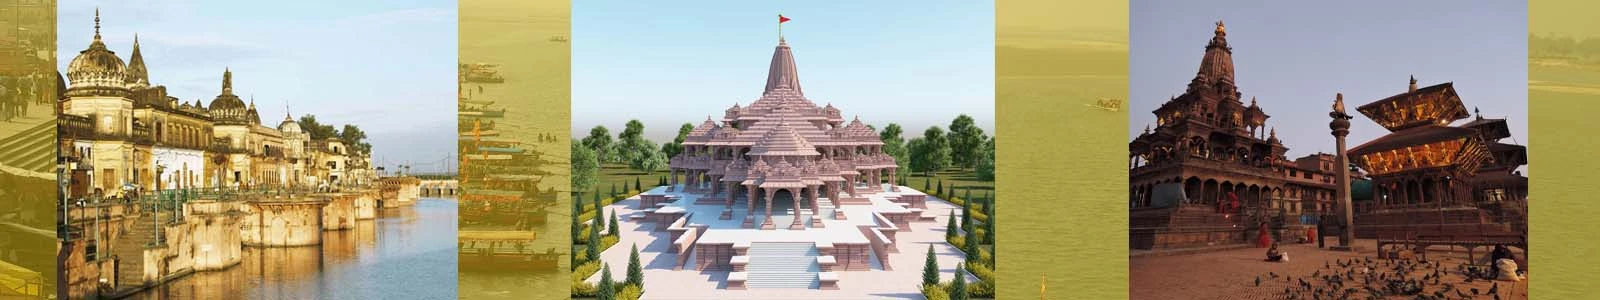 Ayodhya Ram Janmbhoomi Tour Package